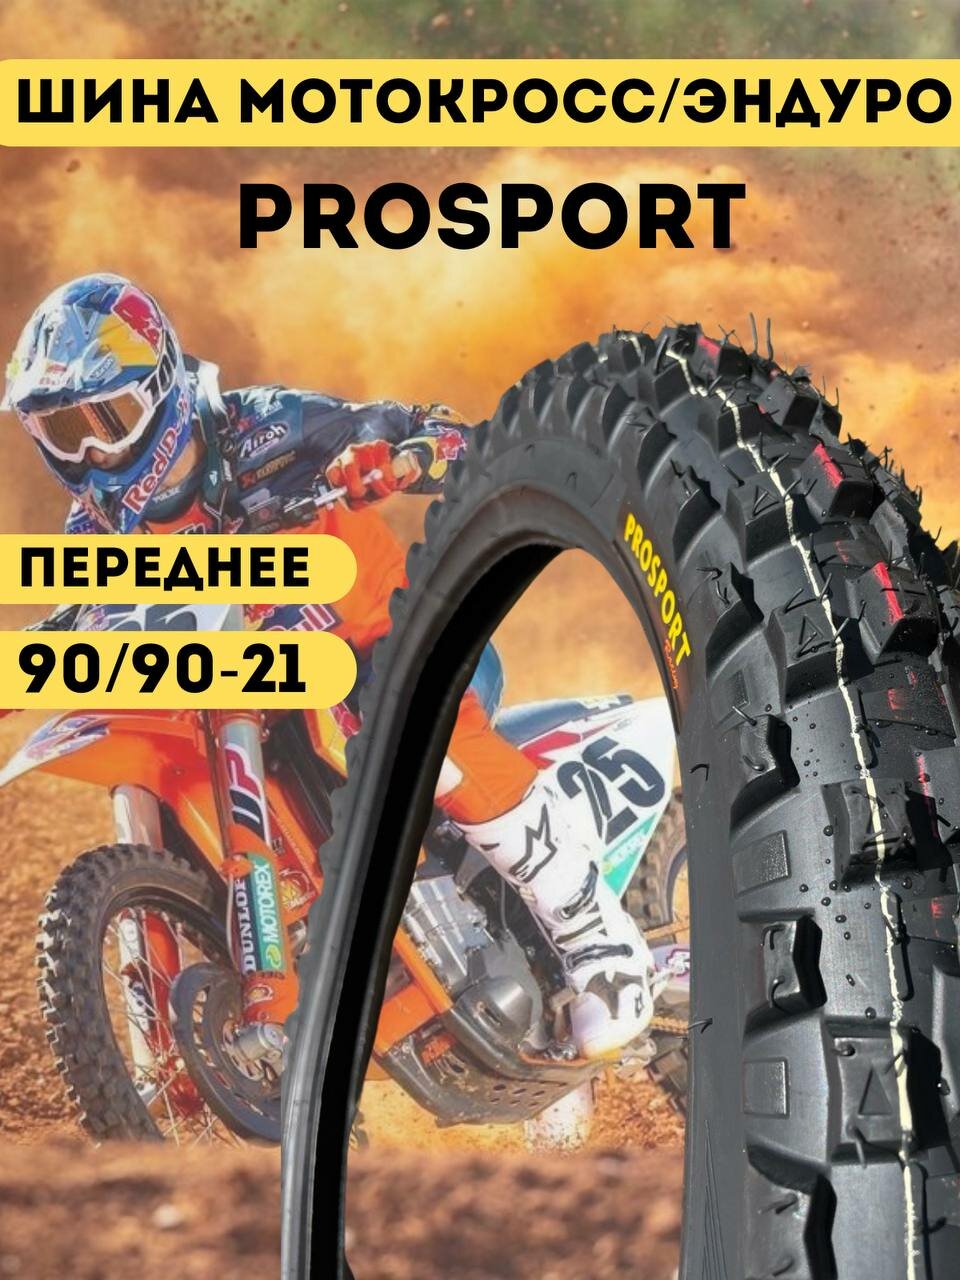 Шина мото покрышка Prosport внедорожная для мотоцикла передняя мотокросс 90/90-21